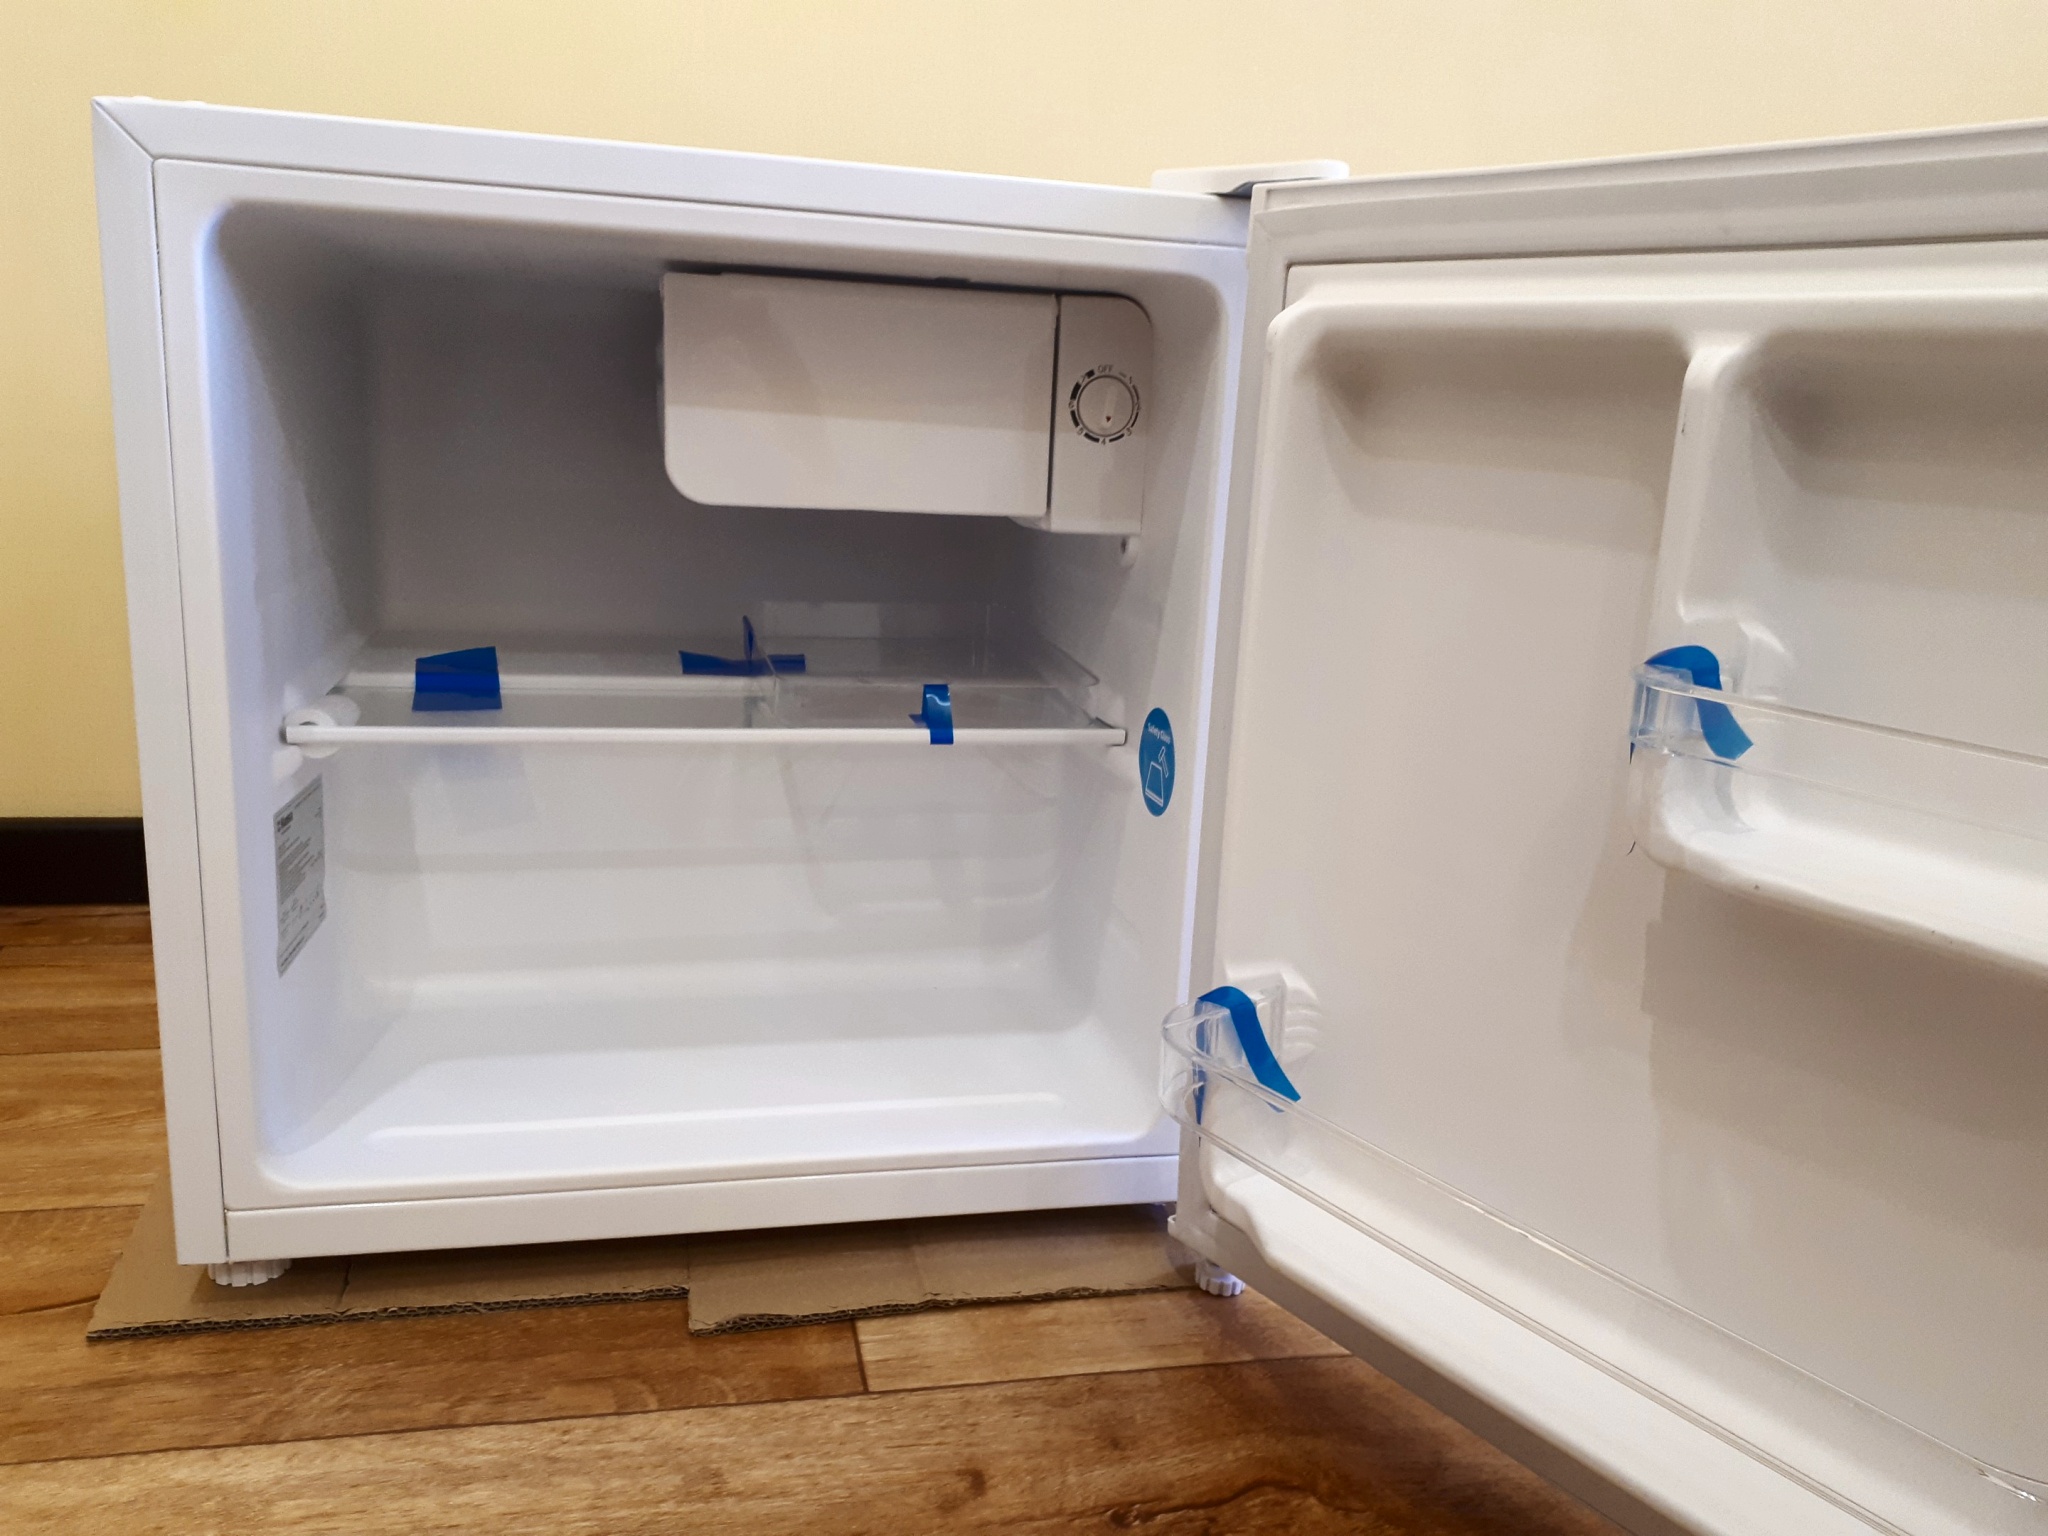 пустой холодильник